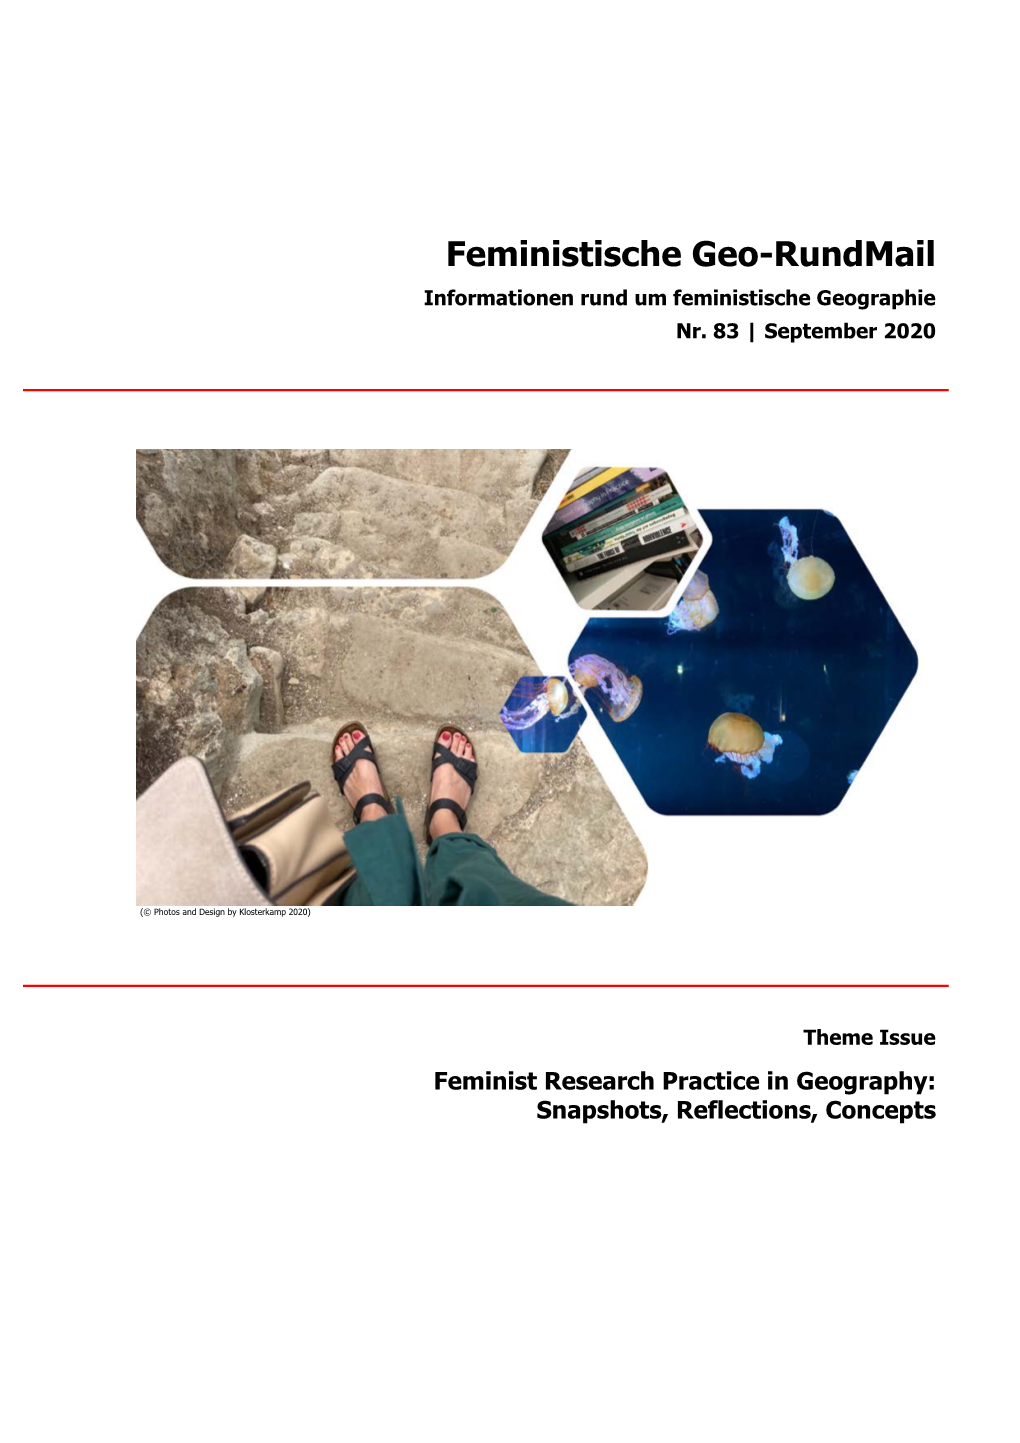 Feministisches Geo-Rundmail Nr